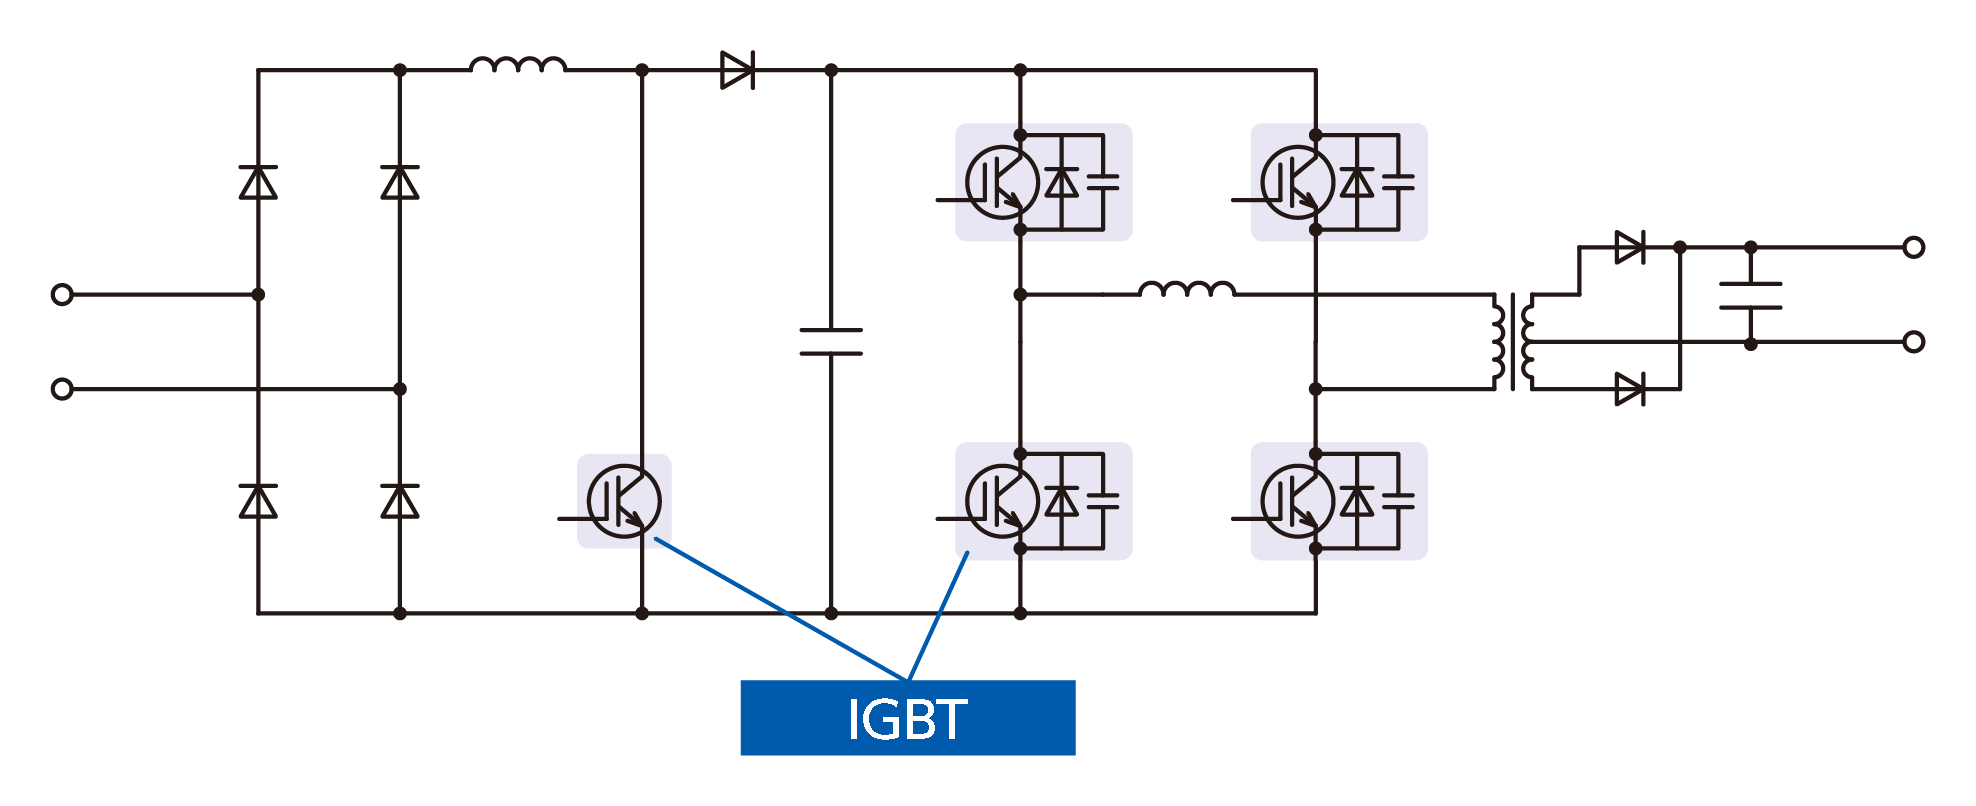 图4. Phase Shift Soft switching converter (ZVZCS)